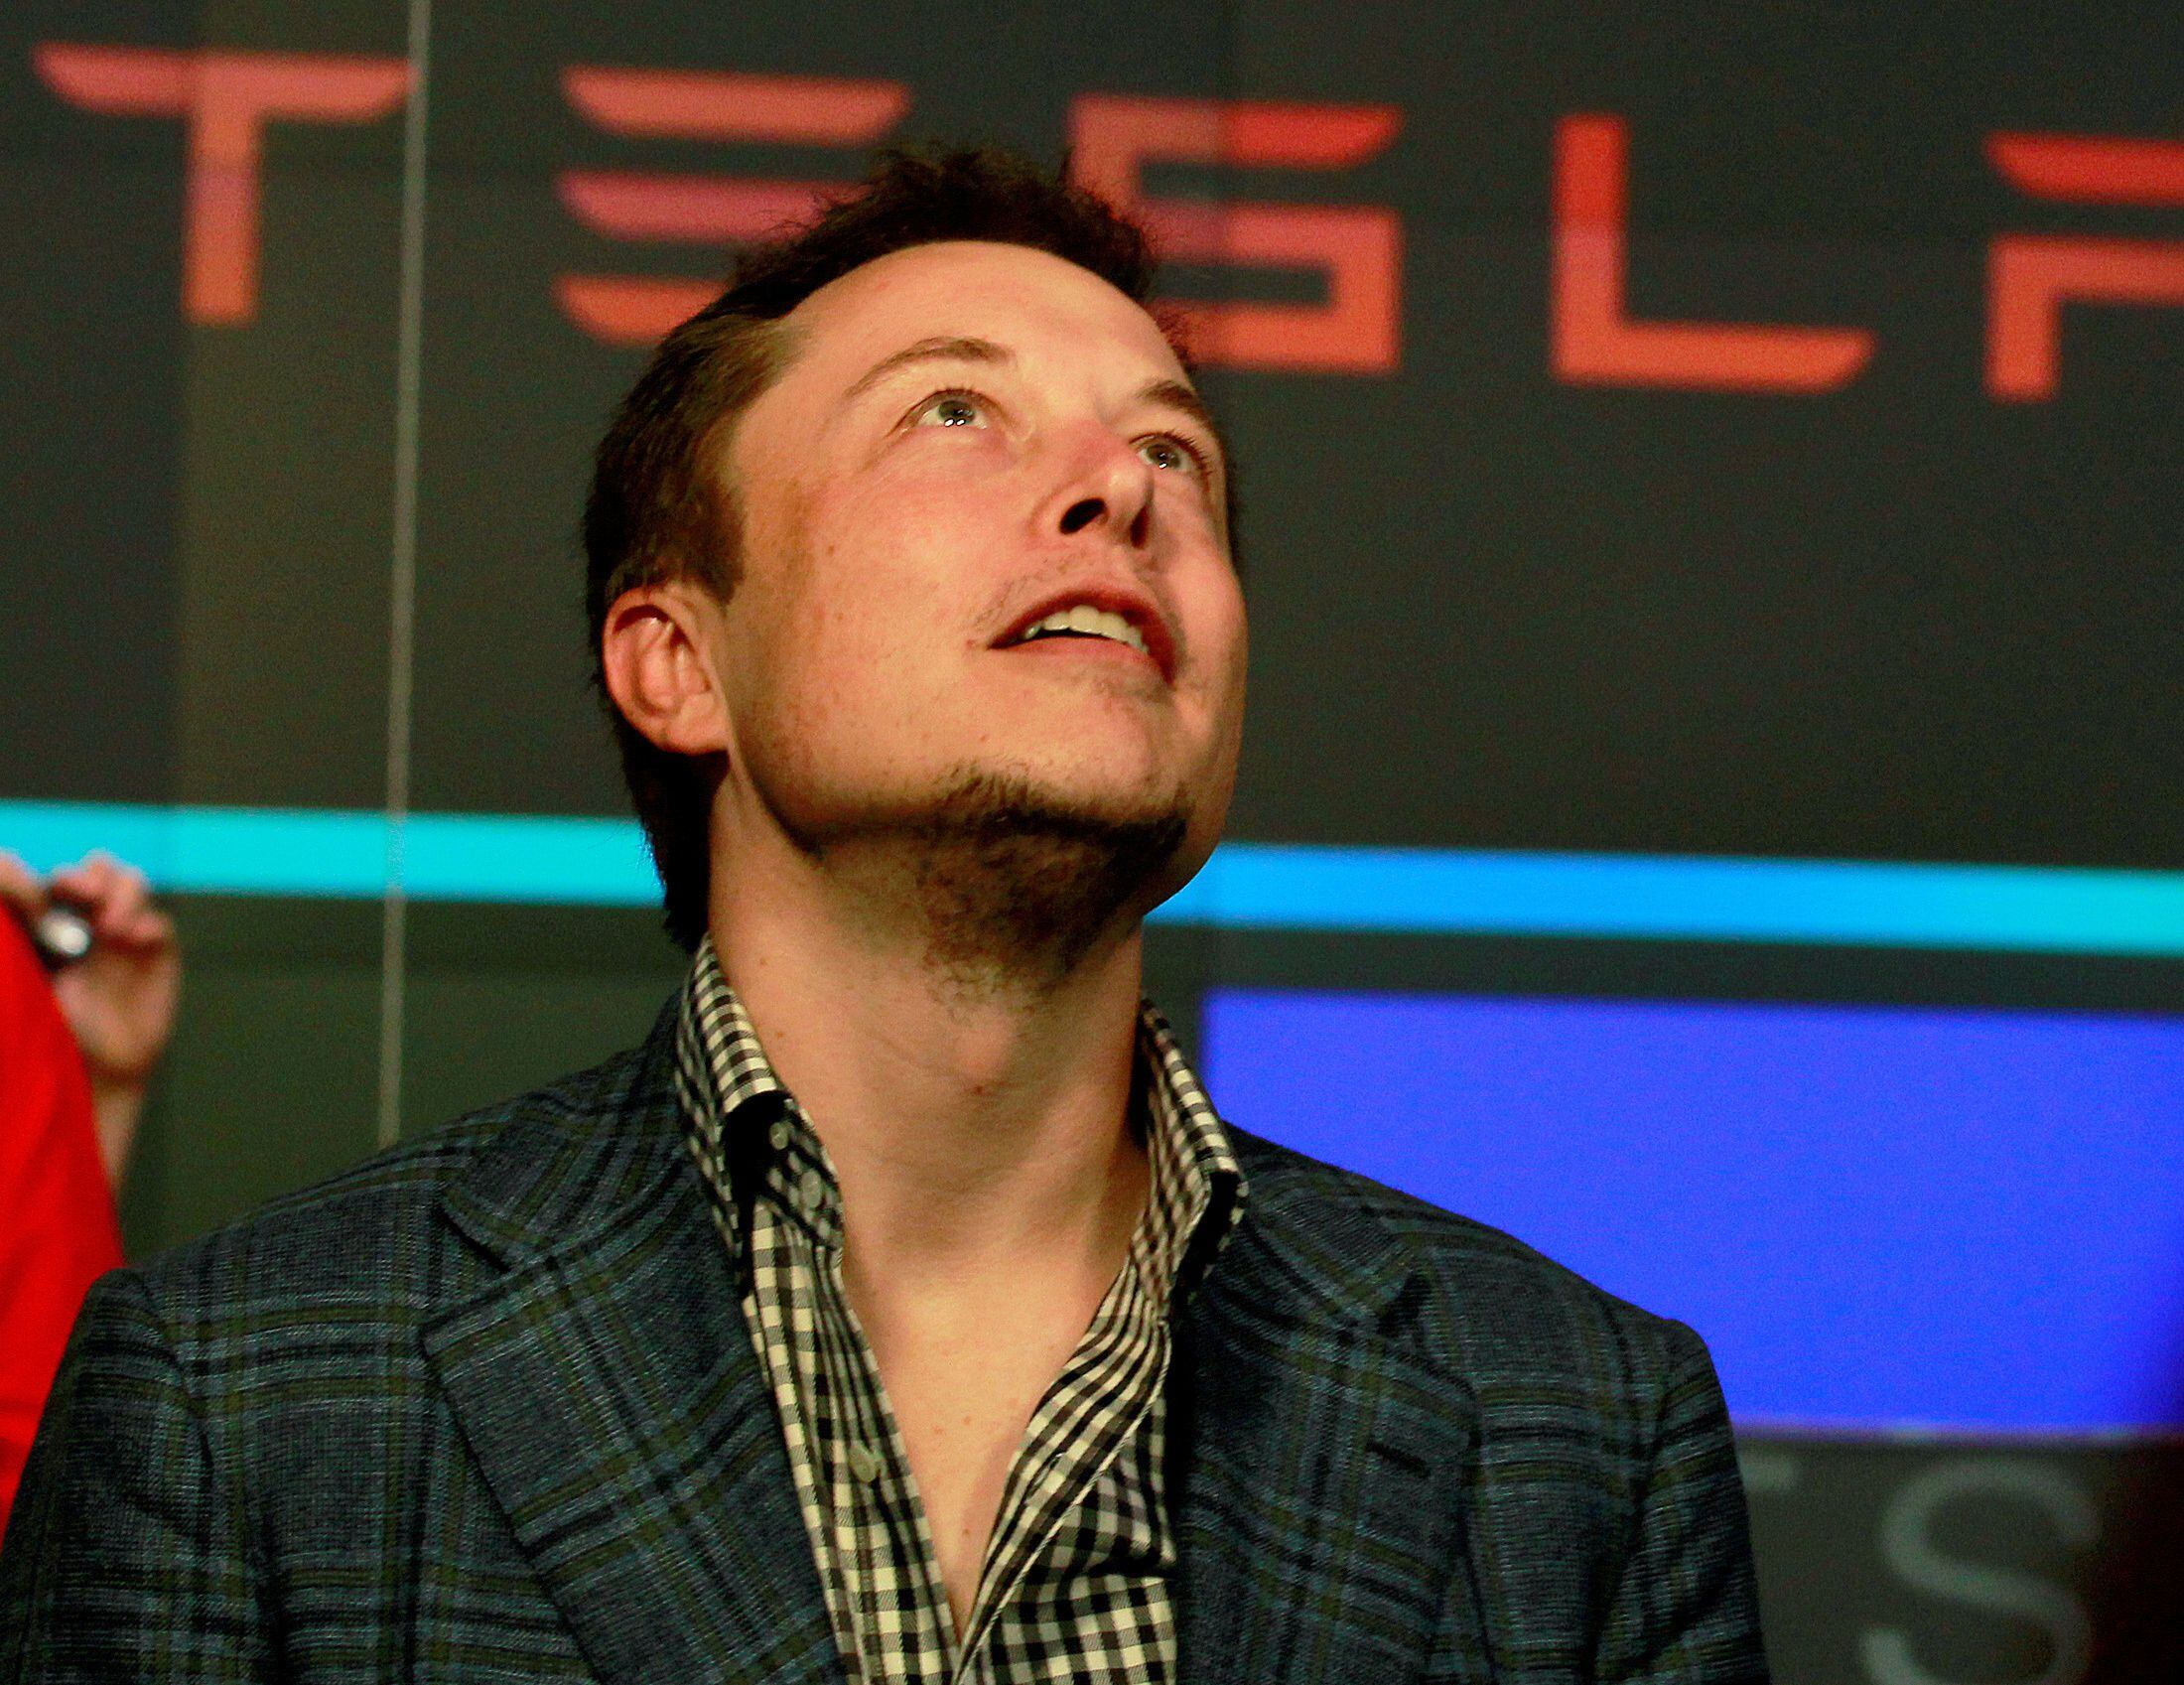 Elon Musk está viviendo momentos de plenitud económica, a punto de ser el primer trillonario del mundo según Forbes